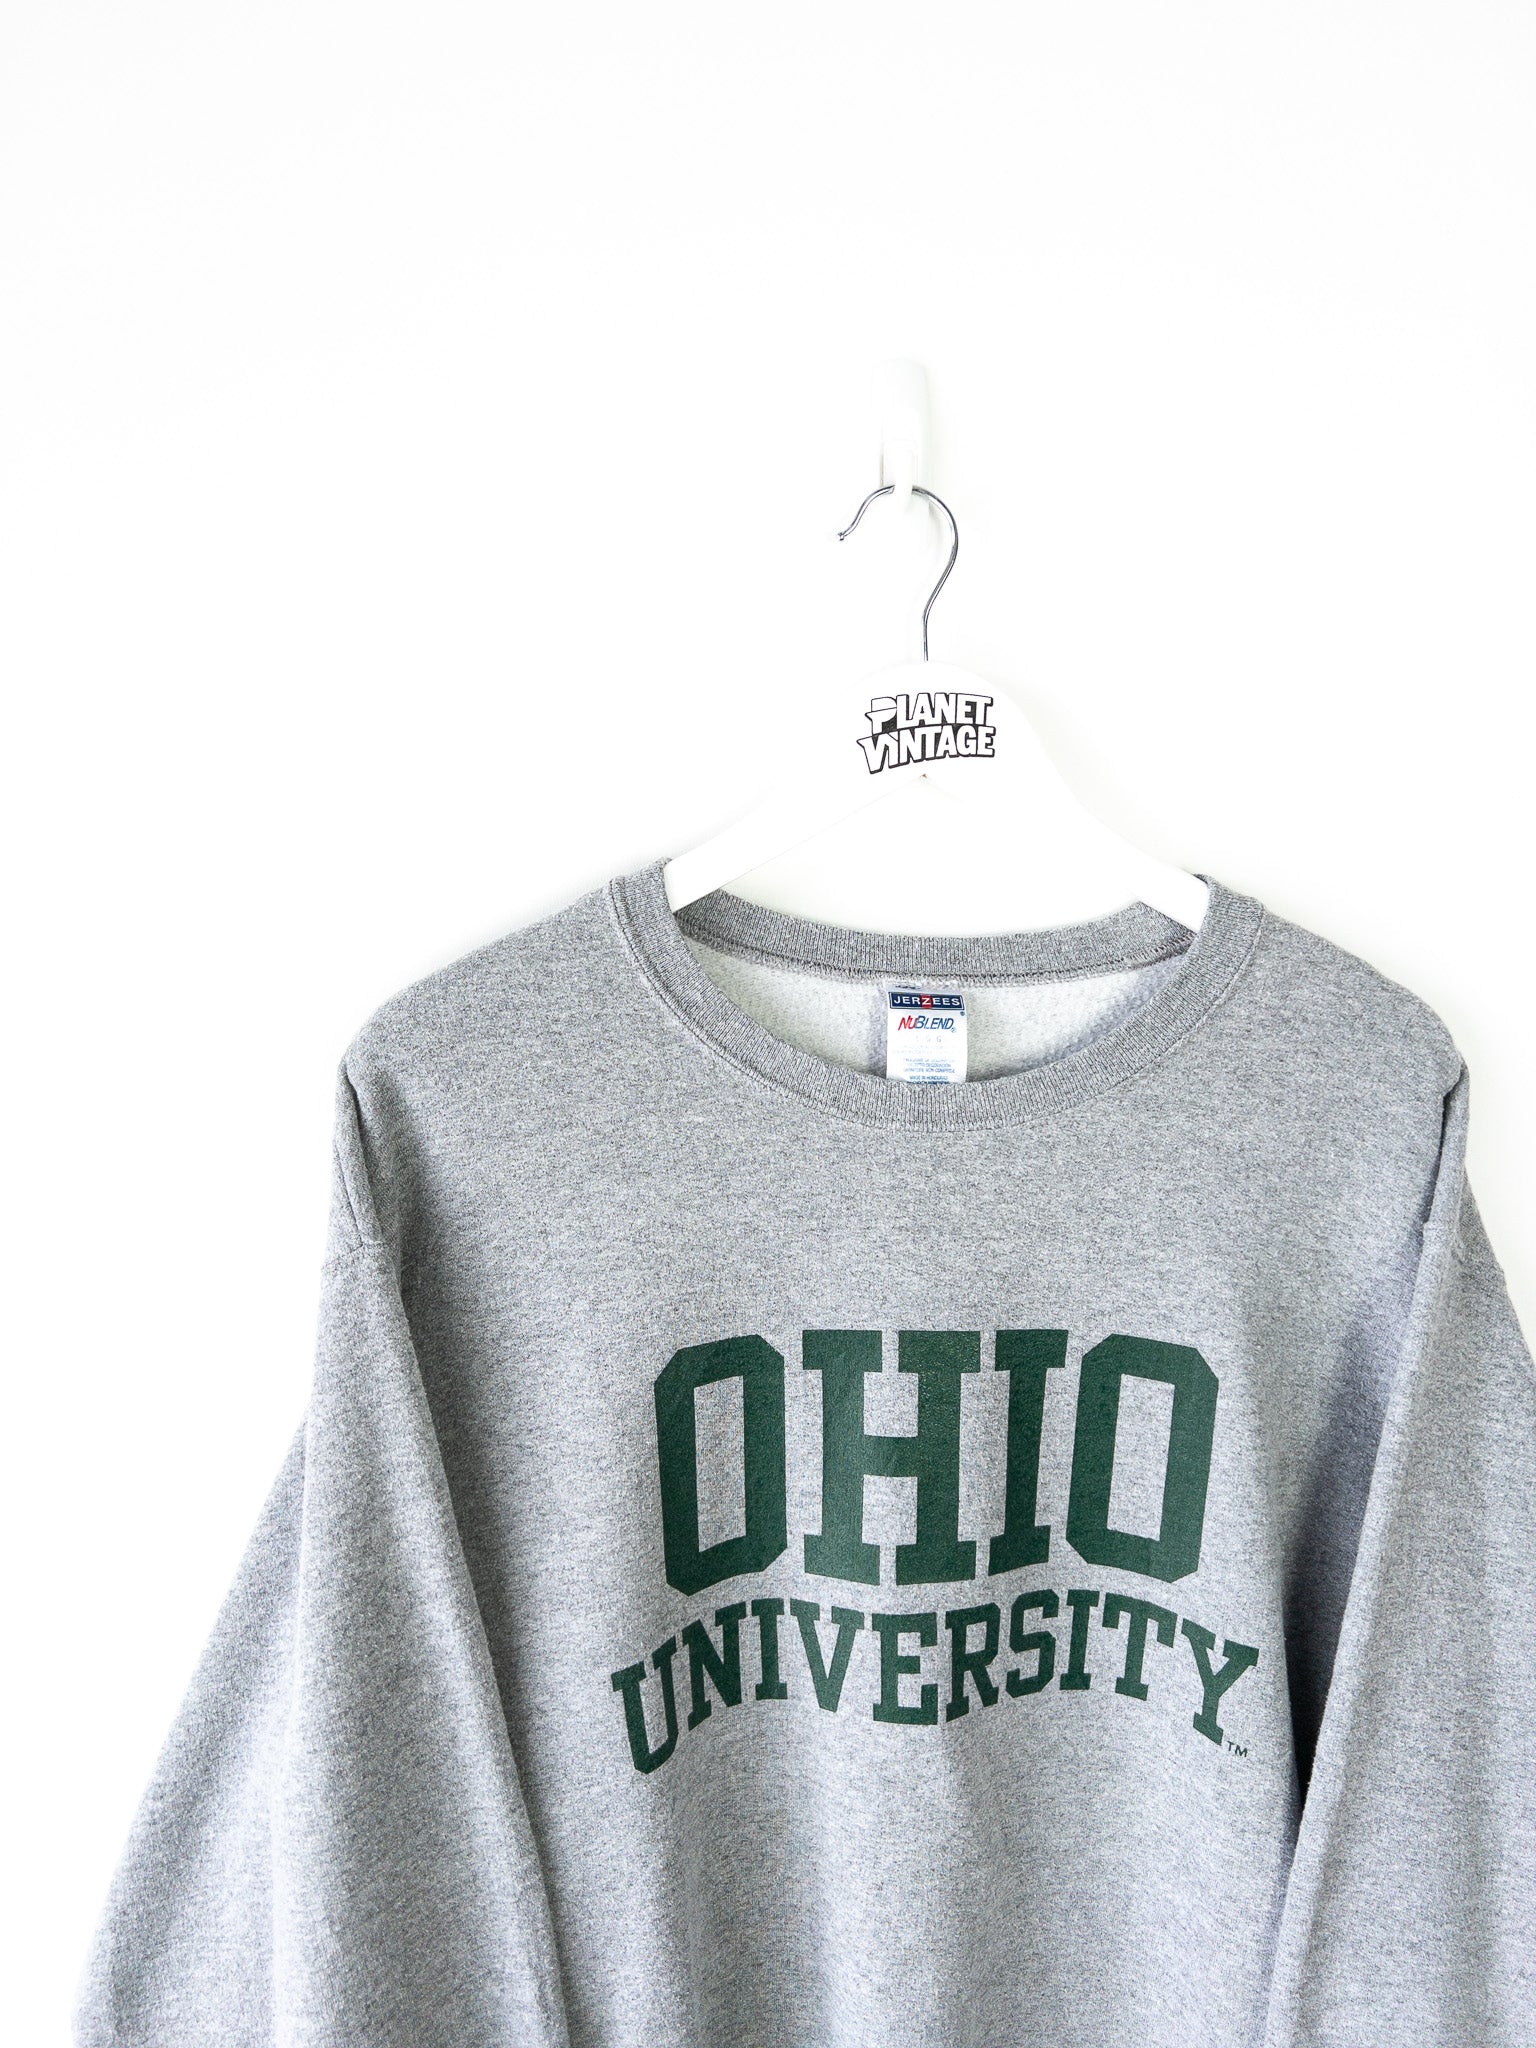 Vintage Ohio University Sweatshirt (L)